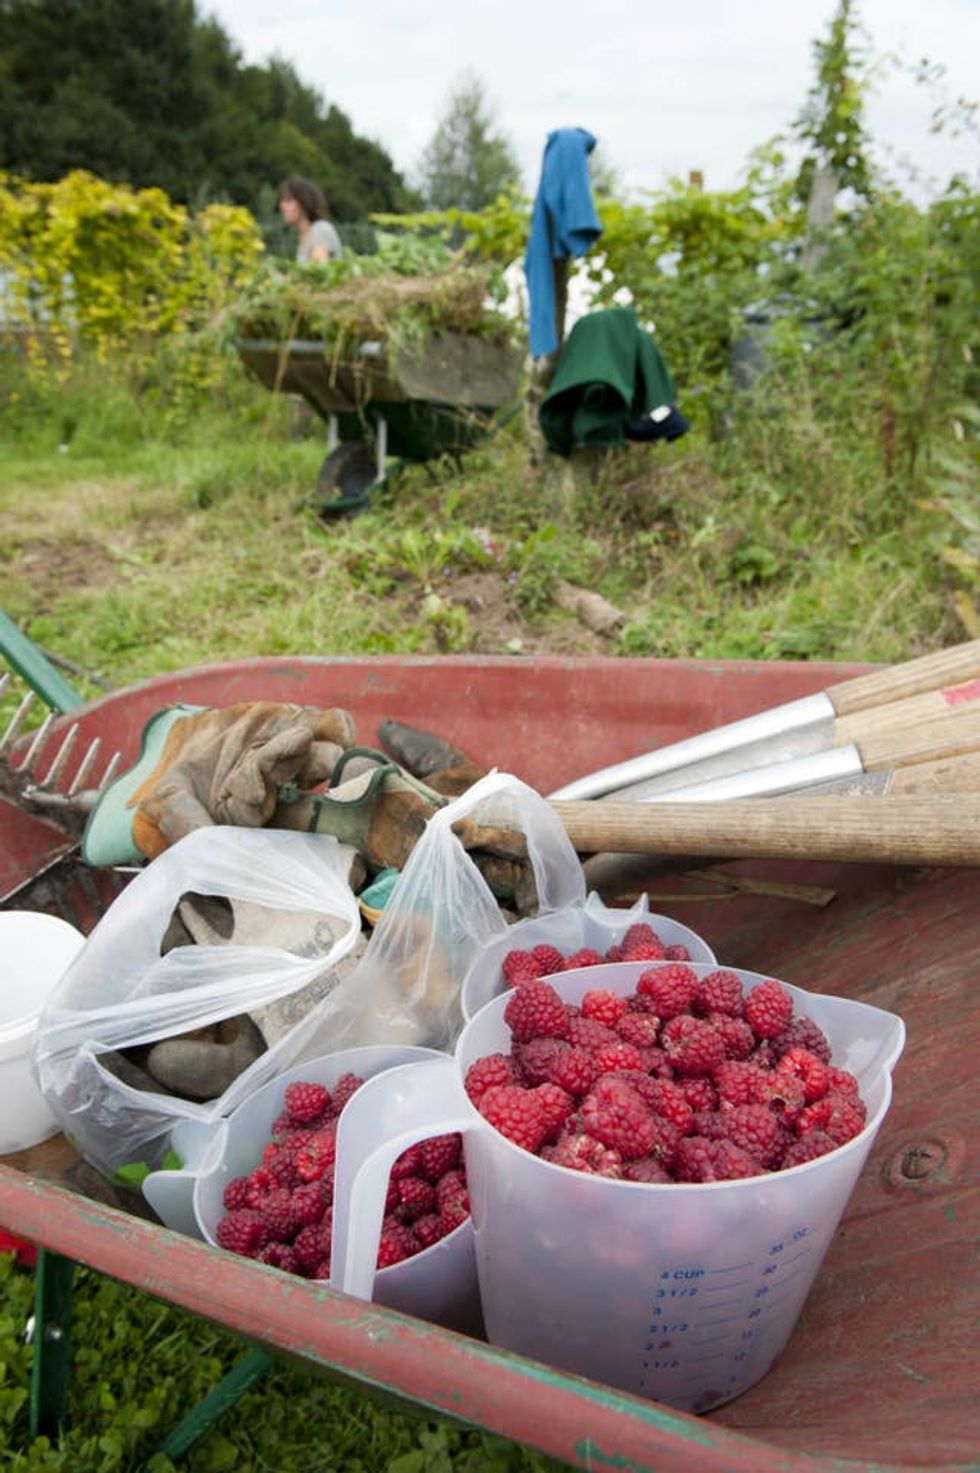 Volunteers harvesting raspberries